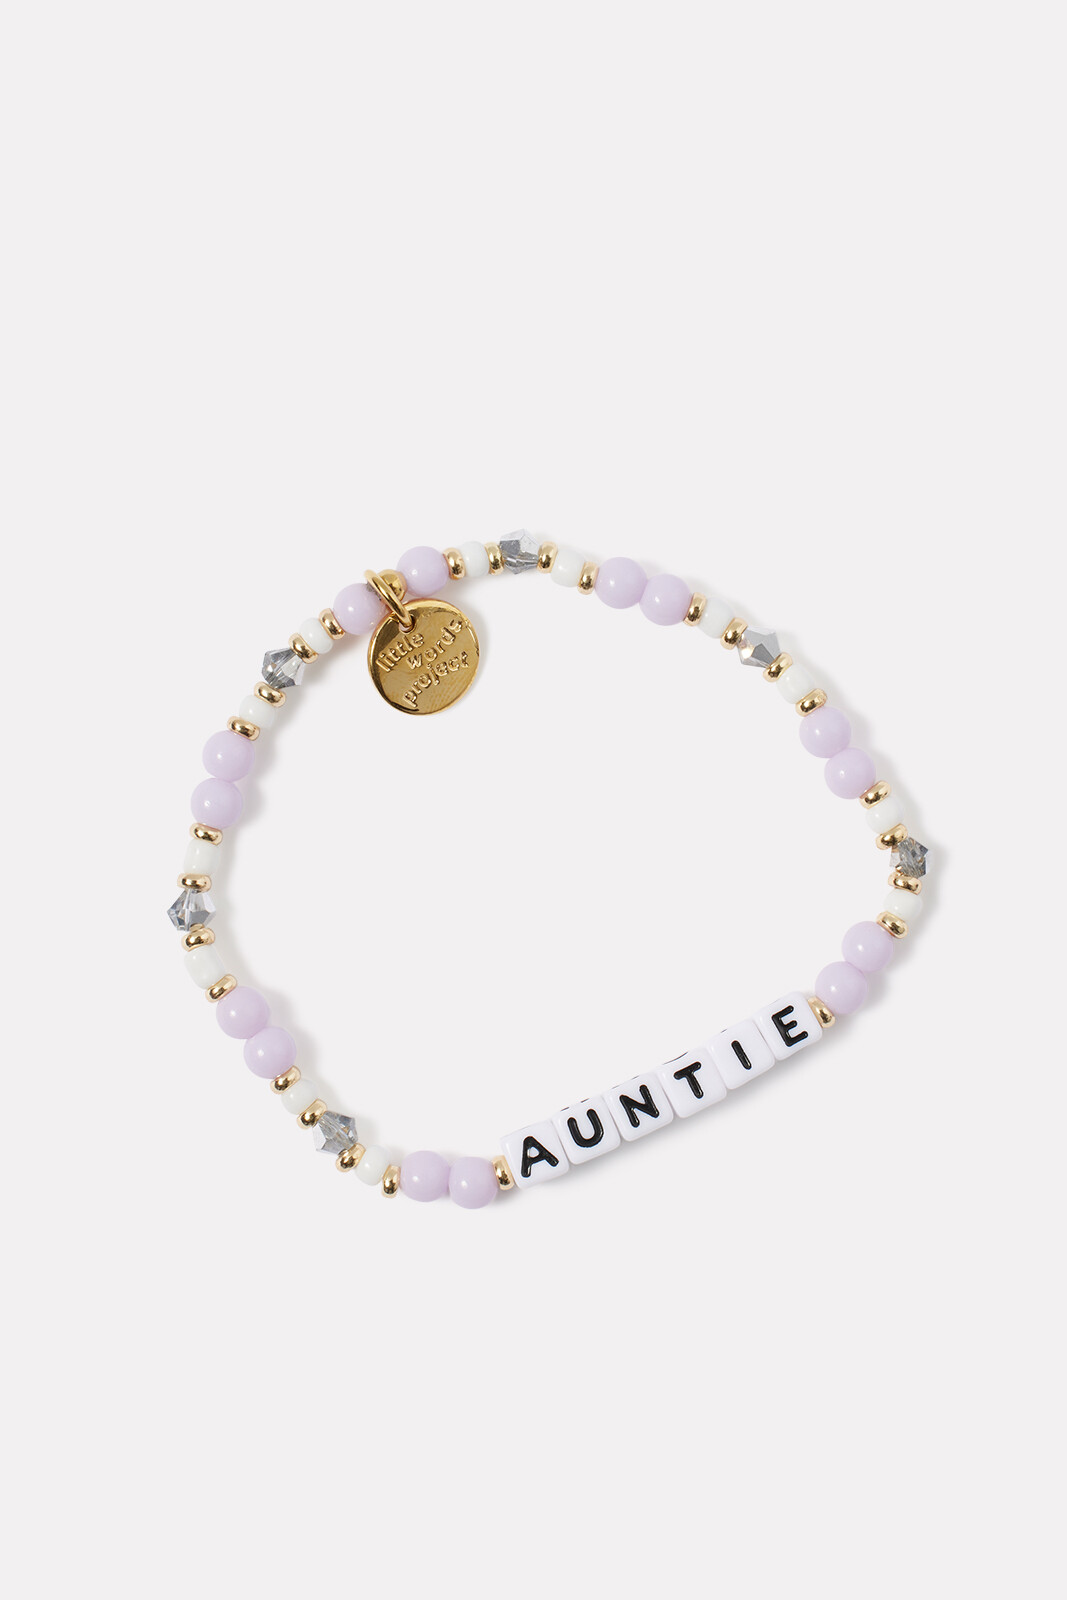 Auntie Bracelet